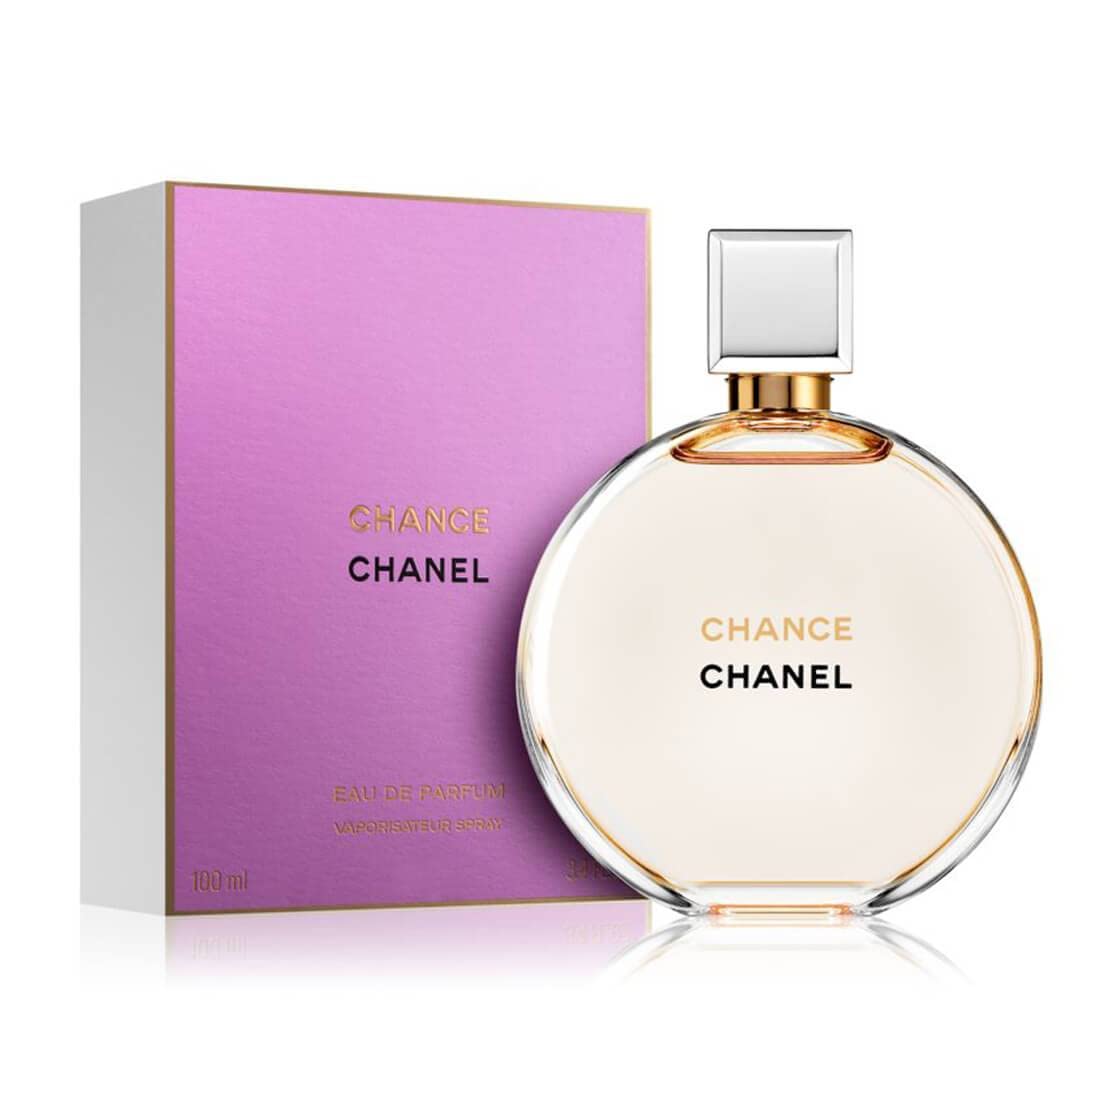 Amazoncom Chânél Coco Mademoiselle  Eau de Parfum en espray para mujer  34 onzas líquidas 34 fl oz  Belleza y Cuidado Personal